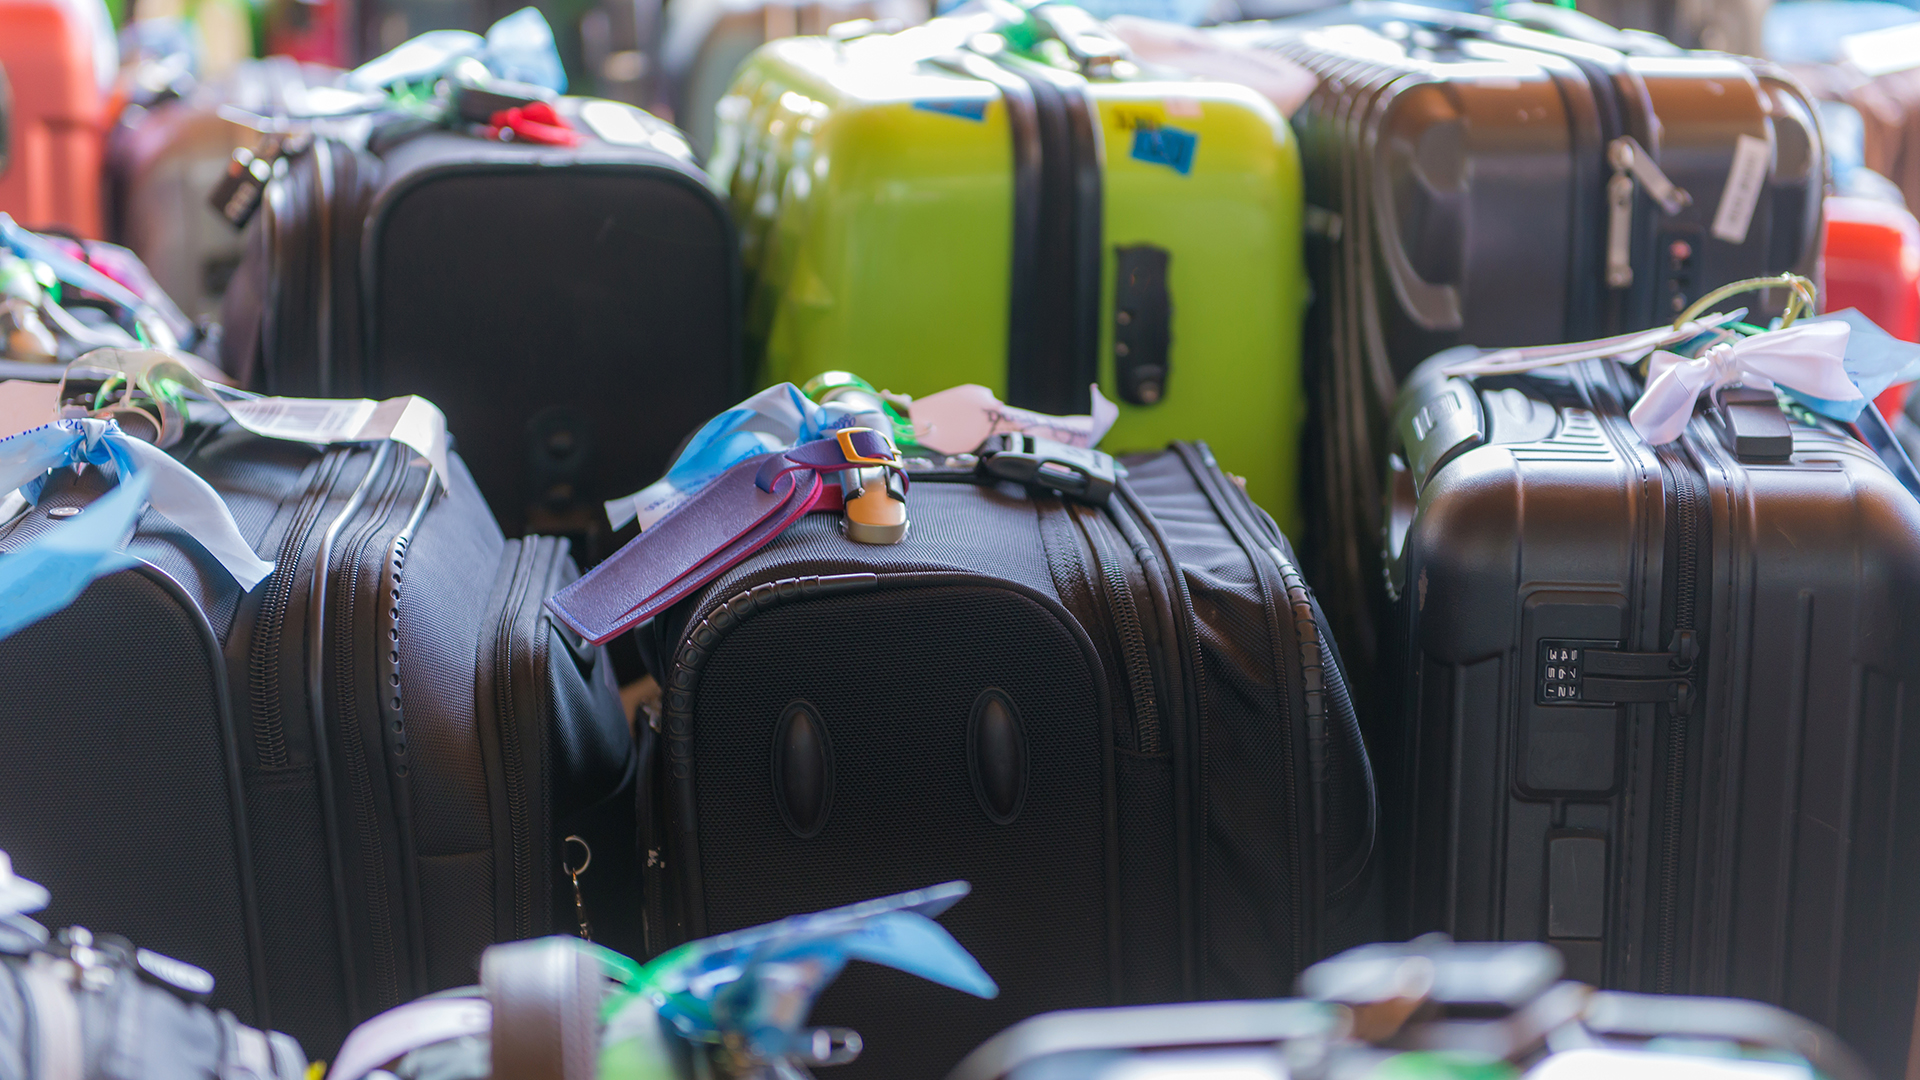 Comment conserver l'aspect neuf de vos bagages ?